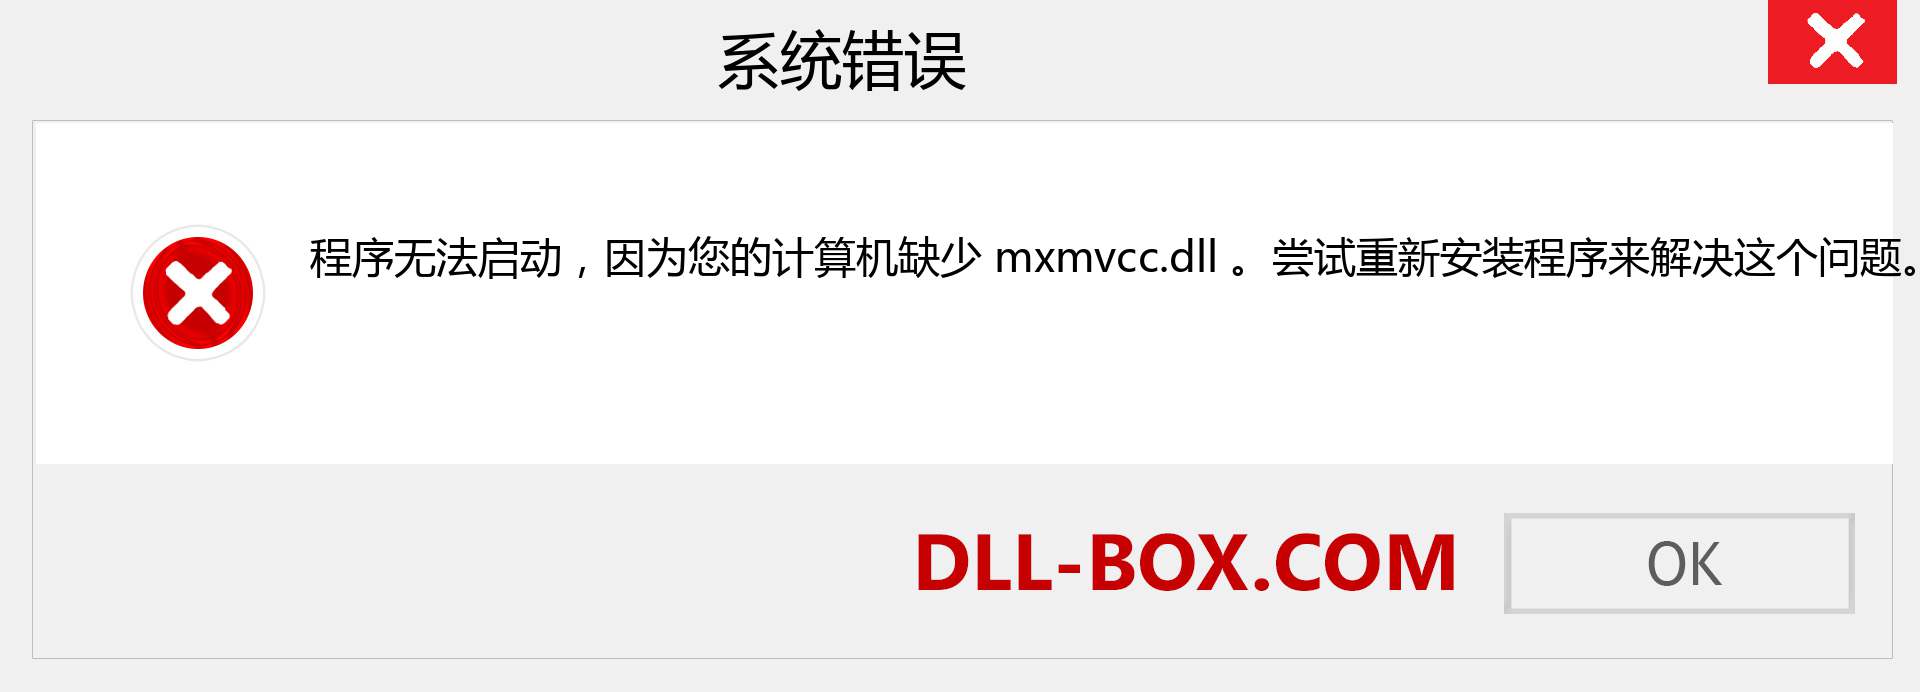 mxmvcc.dll 文件丢失？。 适用于 Windows 7、8、10 的下载 - 修复 Windows、照片、图像上的 mxmvcc dll 丢失错误